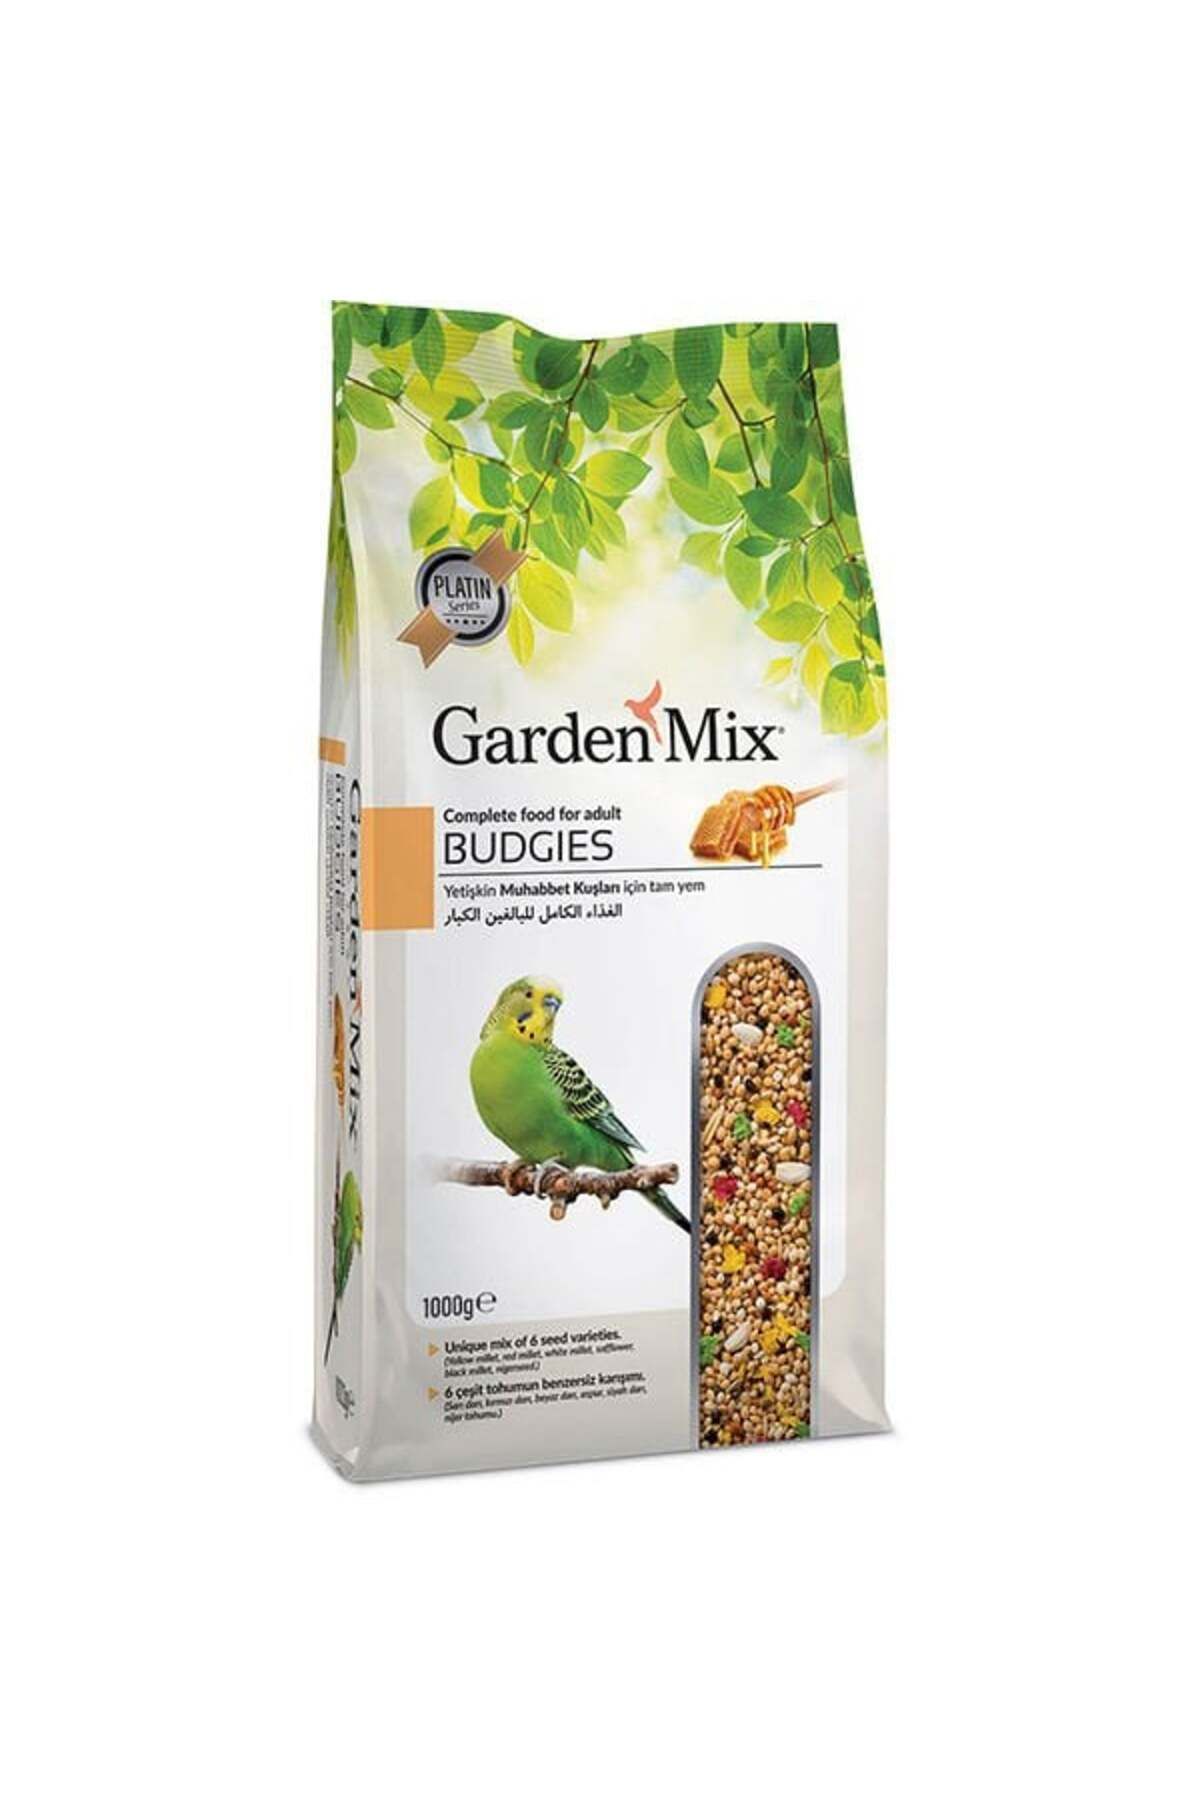 Gardenmix Garden Mix Platin Ballı Muhabbet Kuşu Yemi 1kg